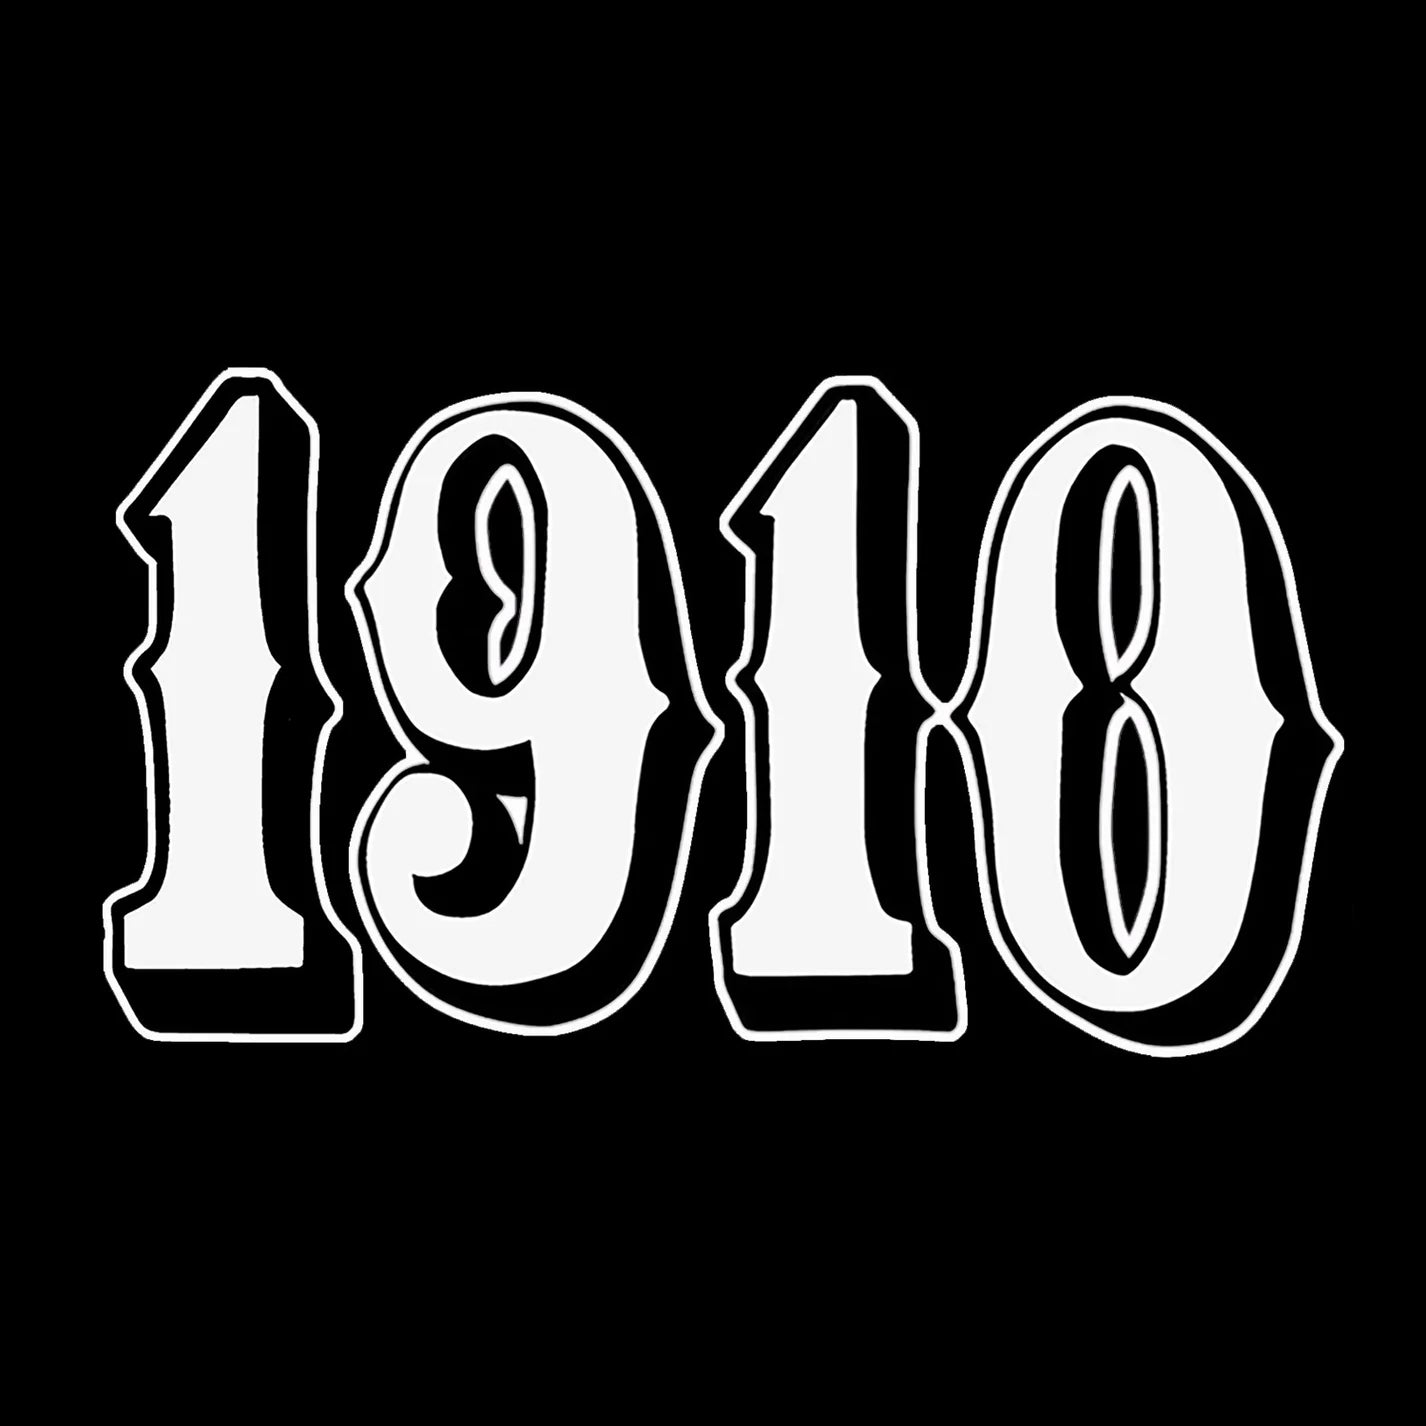 1910 OG Patch Beanie Black Men's Beanies 1910 